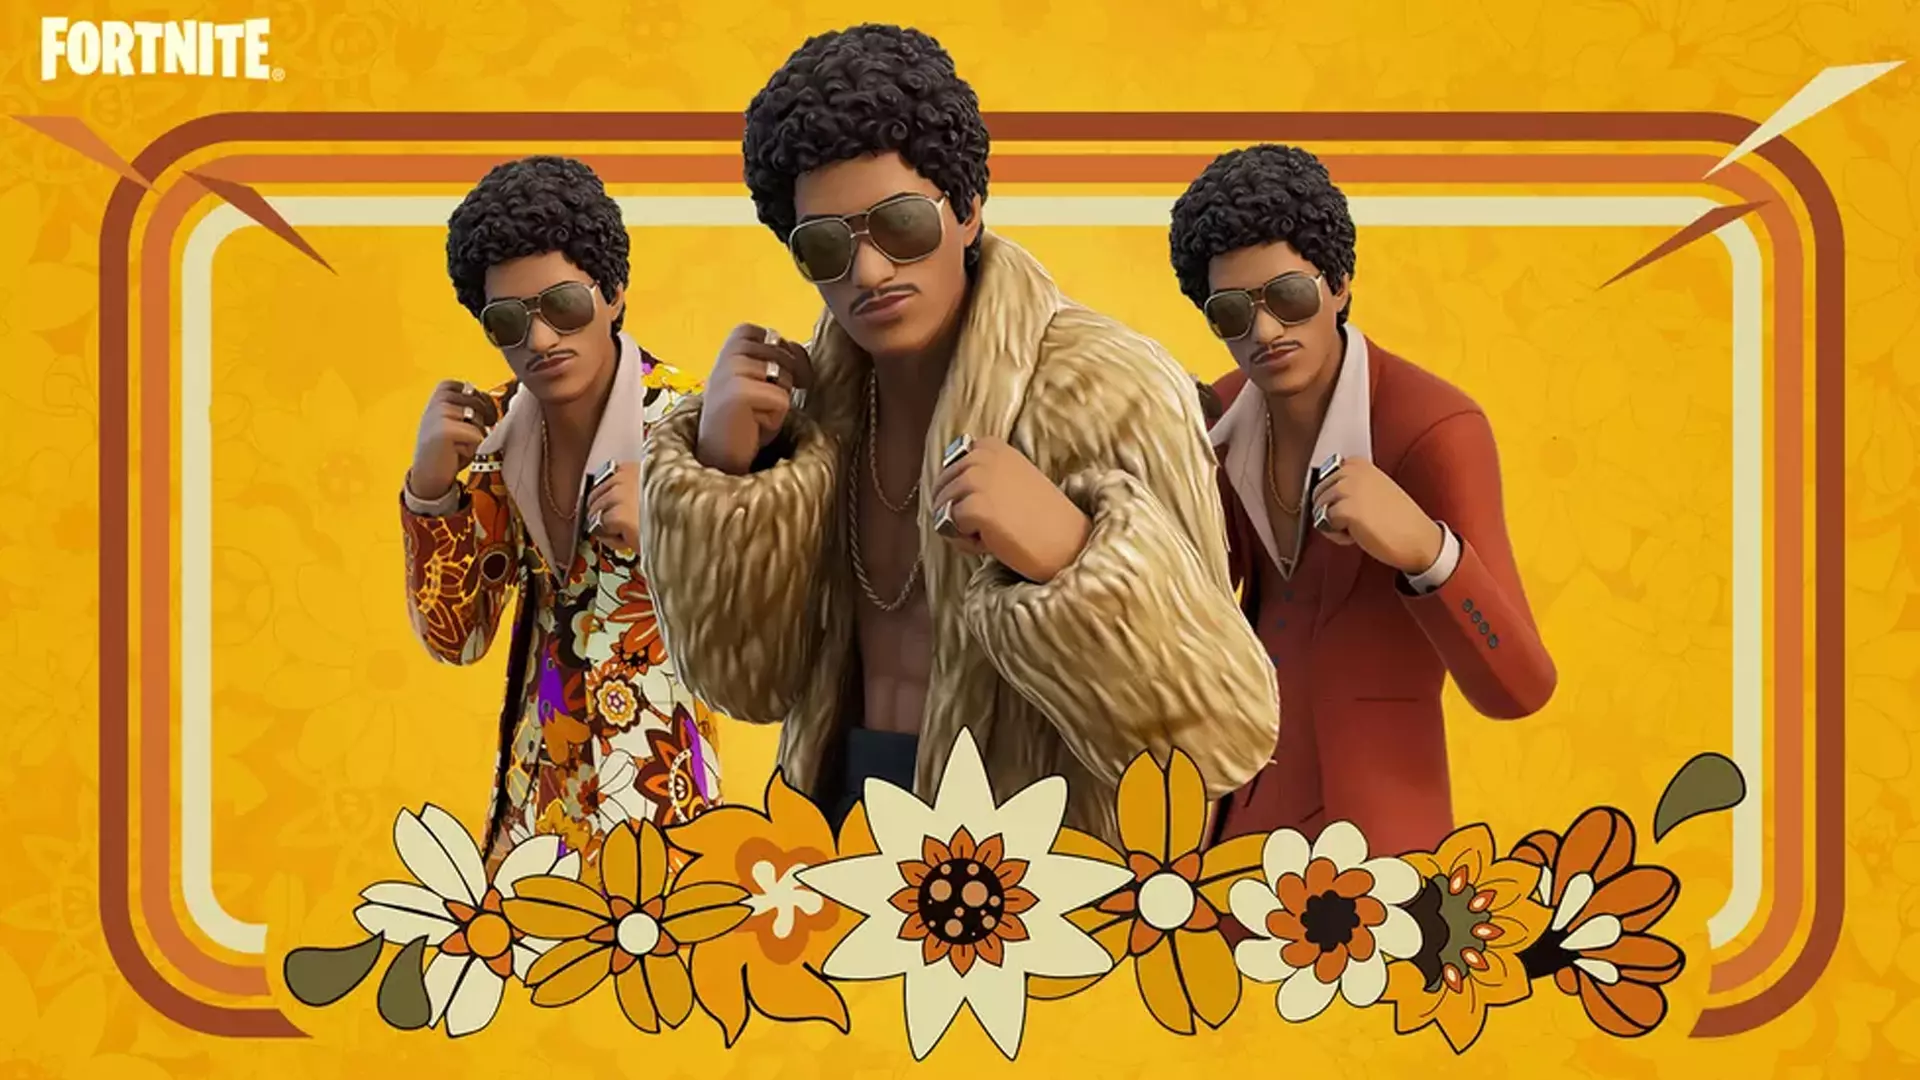 O cantor Bruno Mars como uma skin Fortnite em destaque